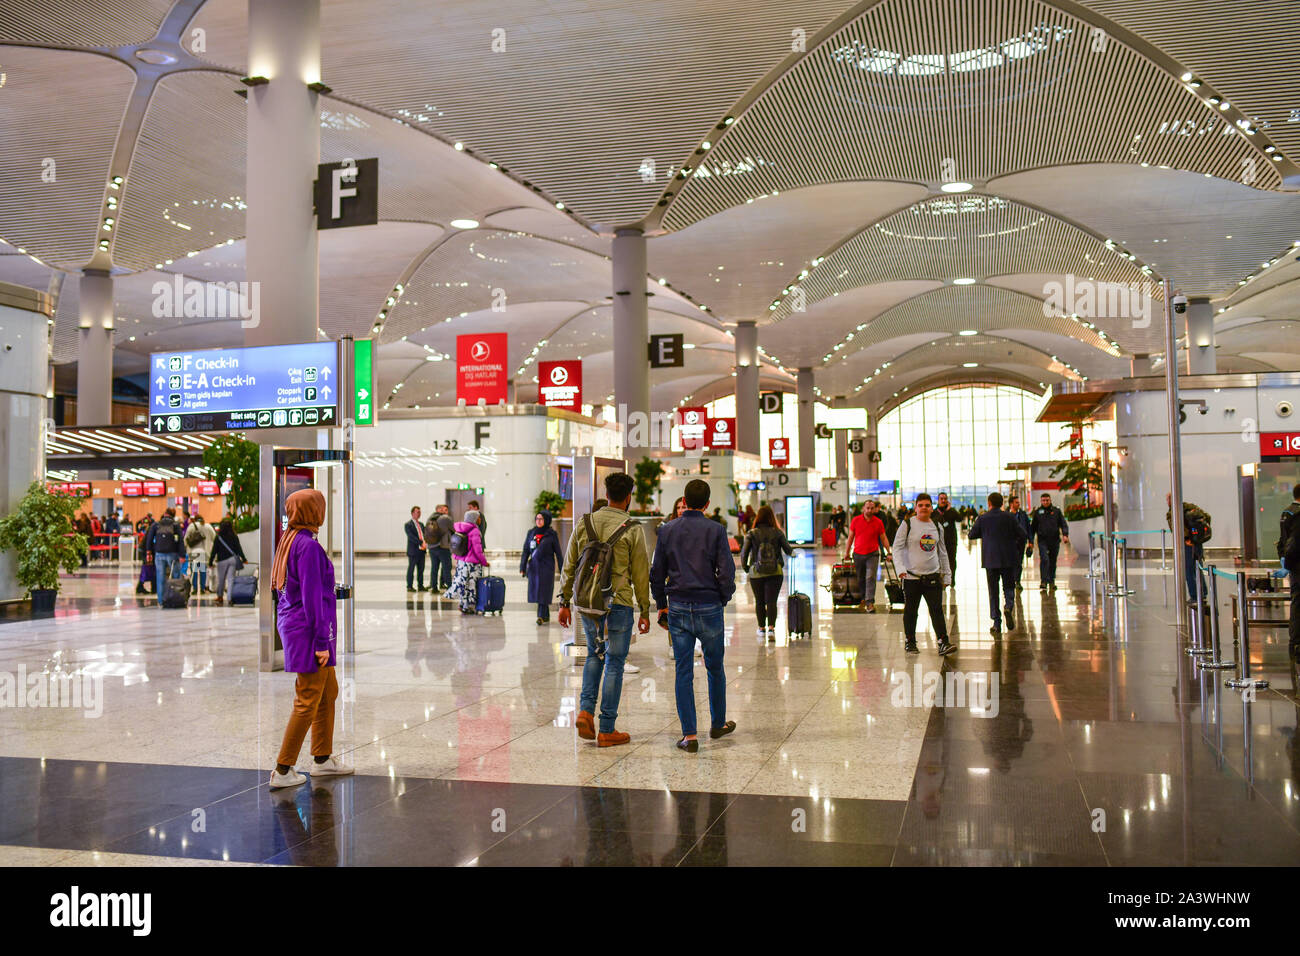 Die Türkei. Flughafen Istanbul Atatürk, von türkischen Präsidenten Recep Tayyip Erdogan am 29. Oktober 2018 eingeweiht, ist weltweit der größte Flughafen in Bezug auf Stockfoto